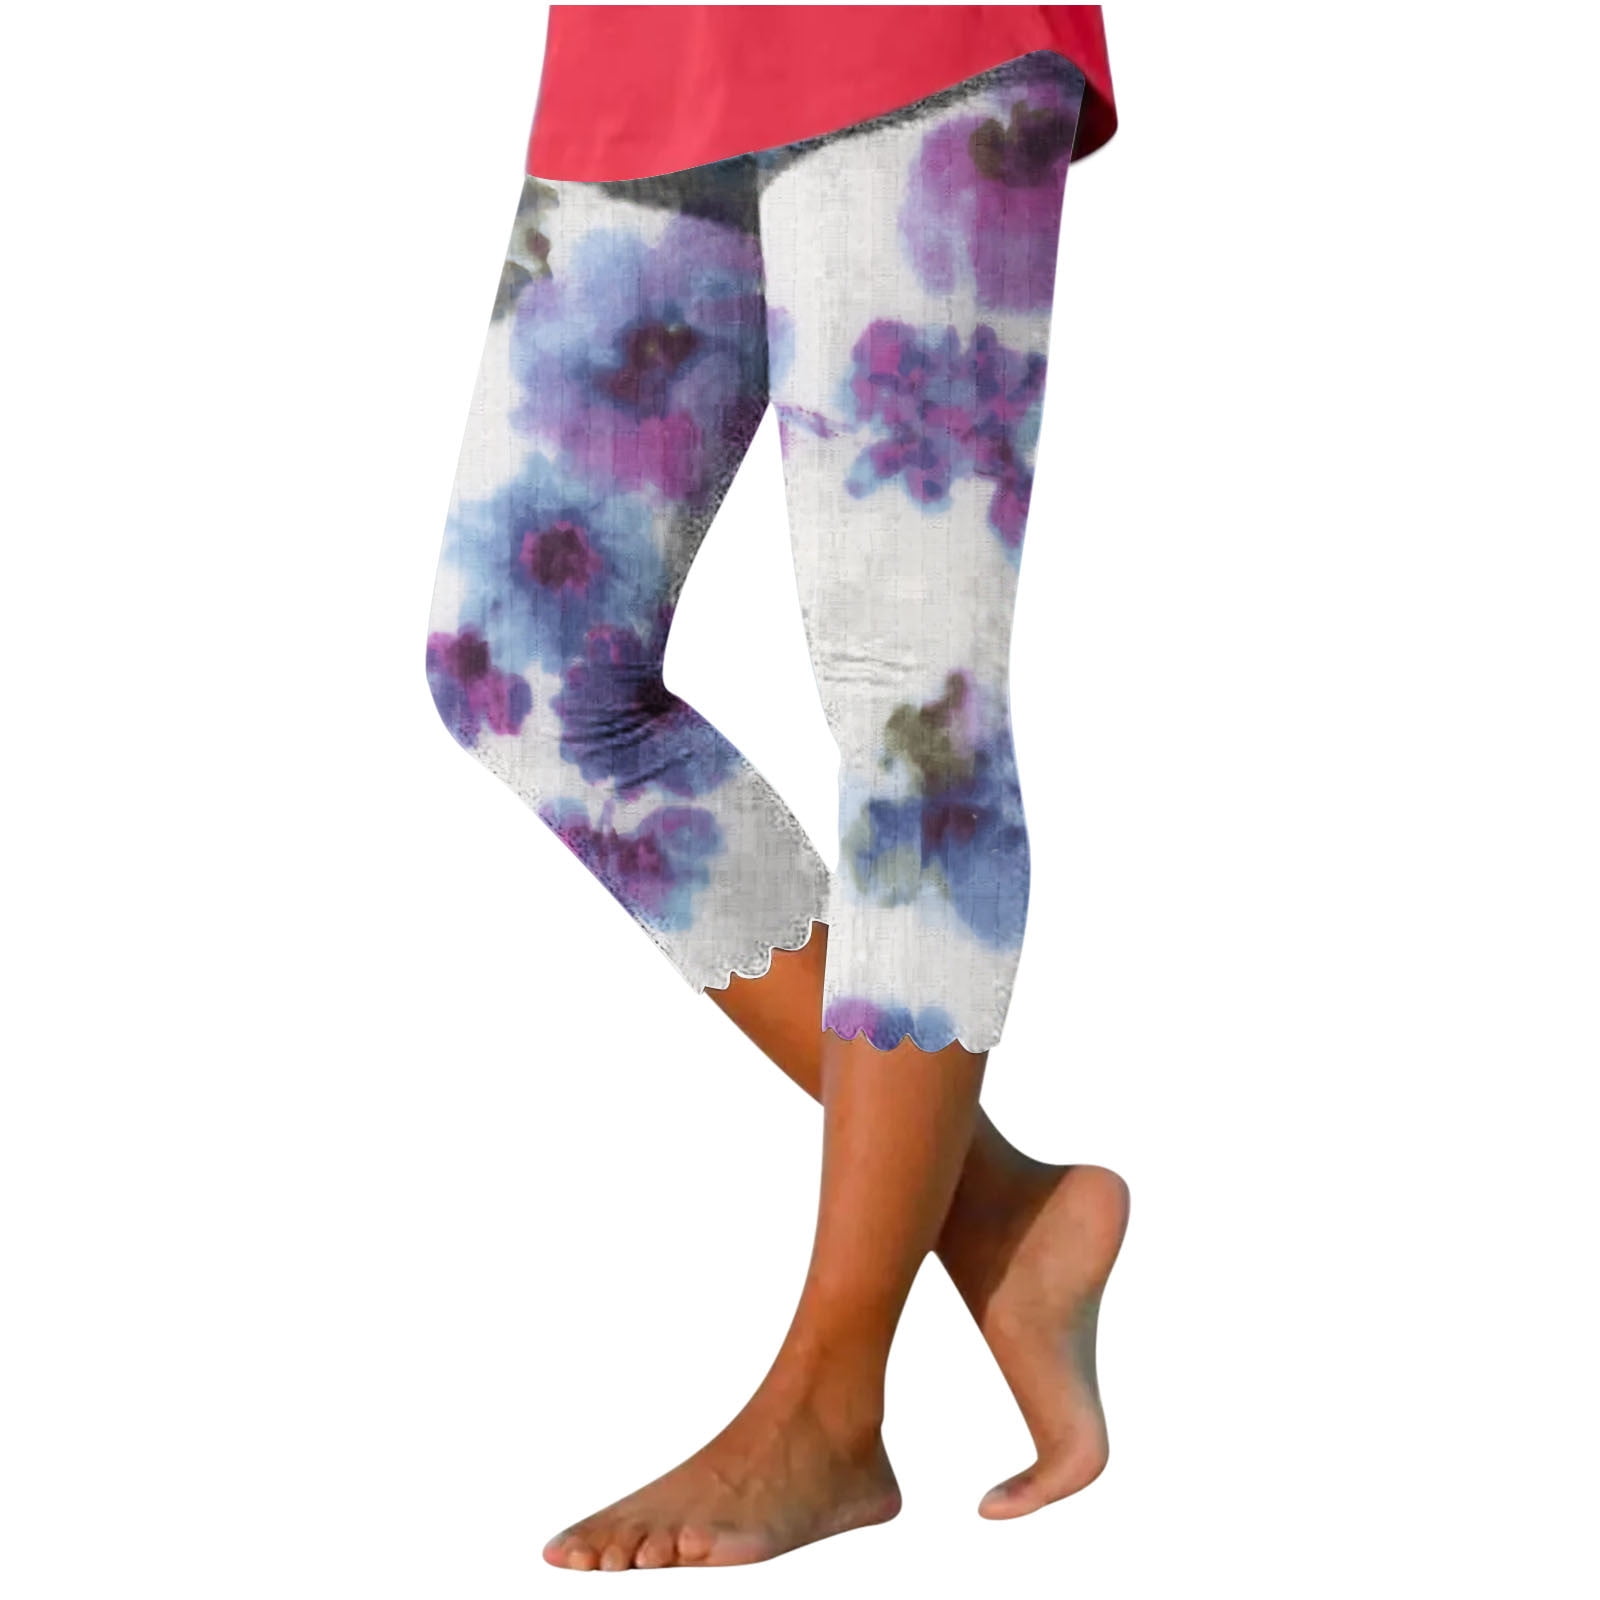 New! Girl's Purple Tank Top and Multi Print Capri Leggings Outfit